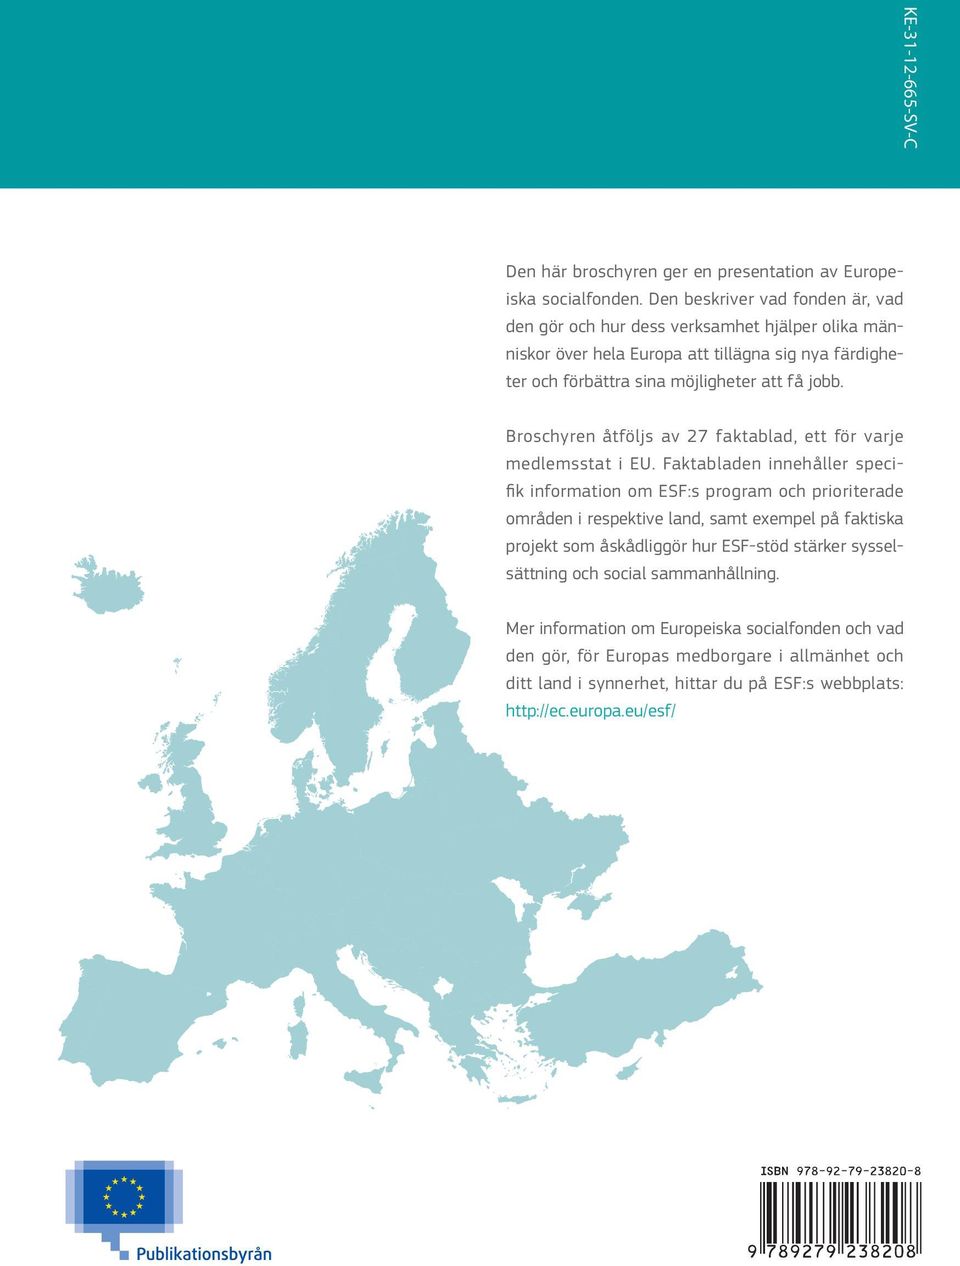 Broschyren åtföljs av 27 faktablad, ett för varje medlemsstat i EU.